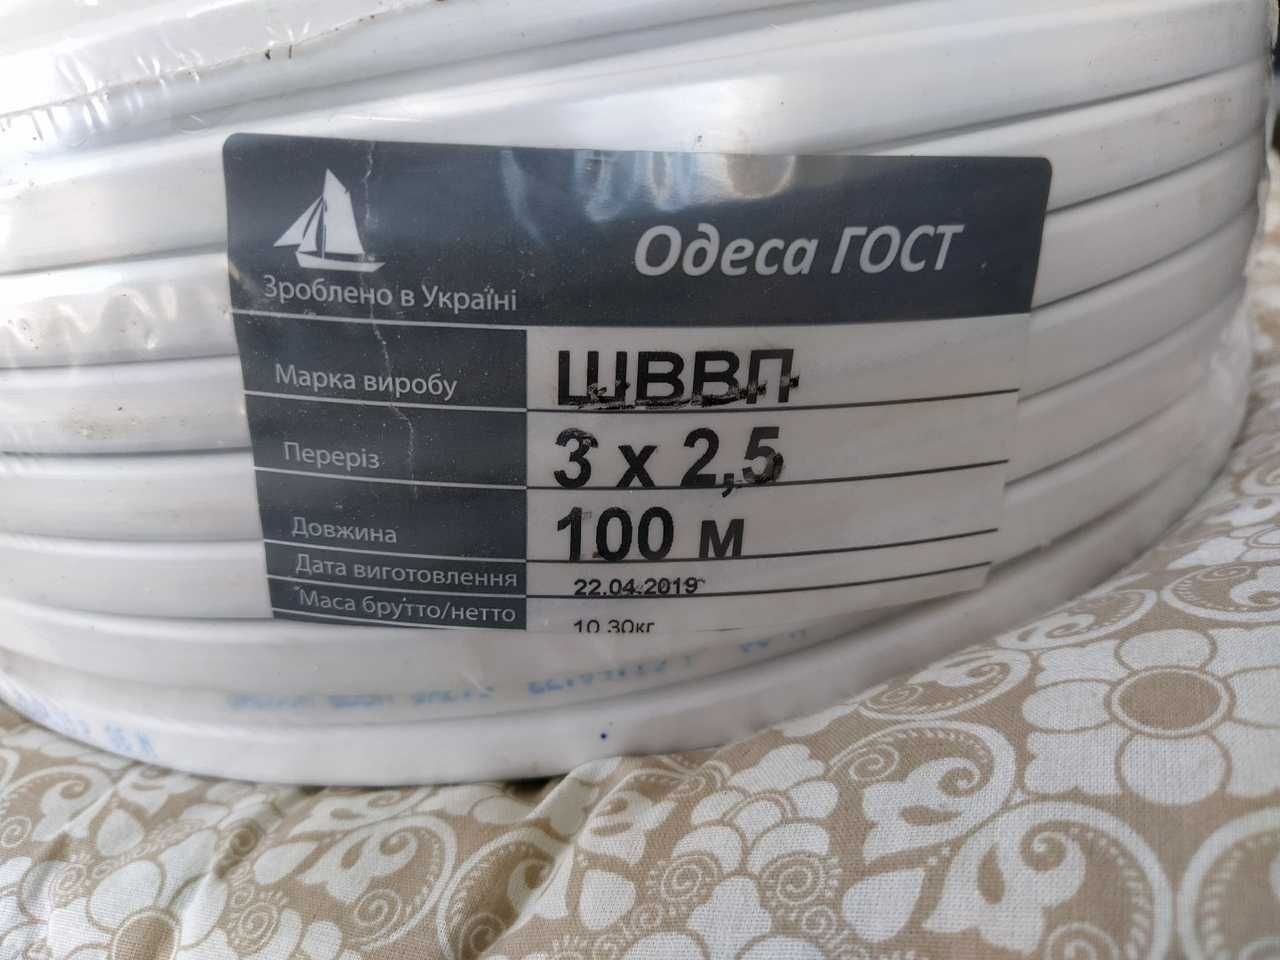 кабель провод шввп 2*2,5 бухтами по 100м Одесса